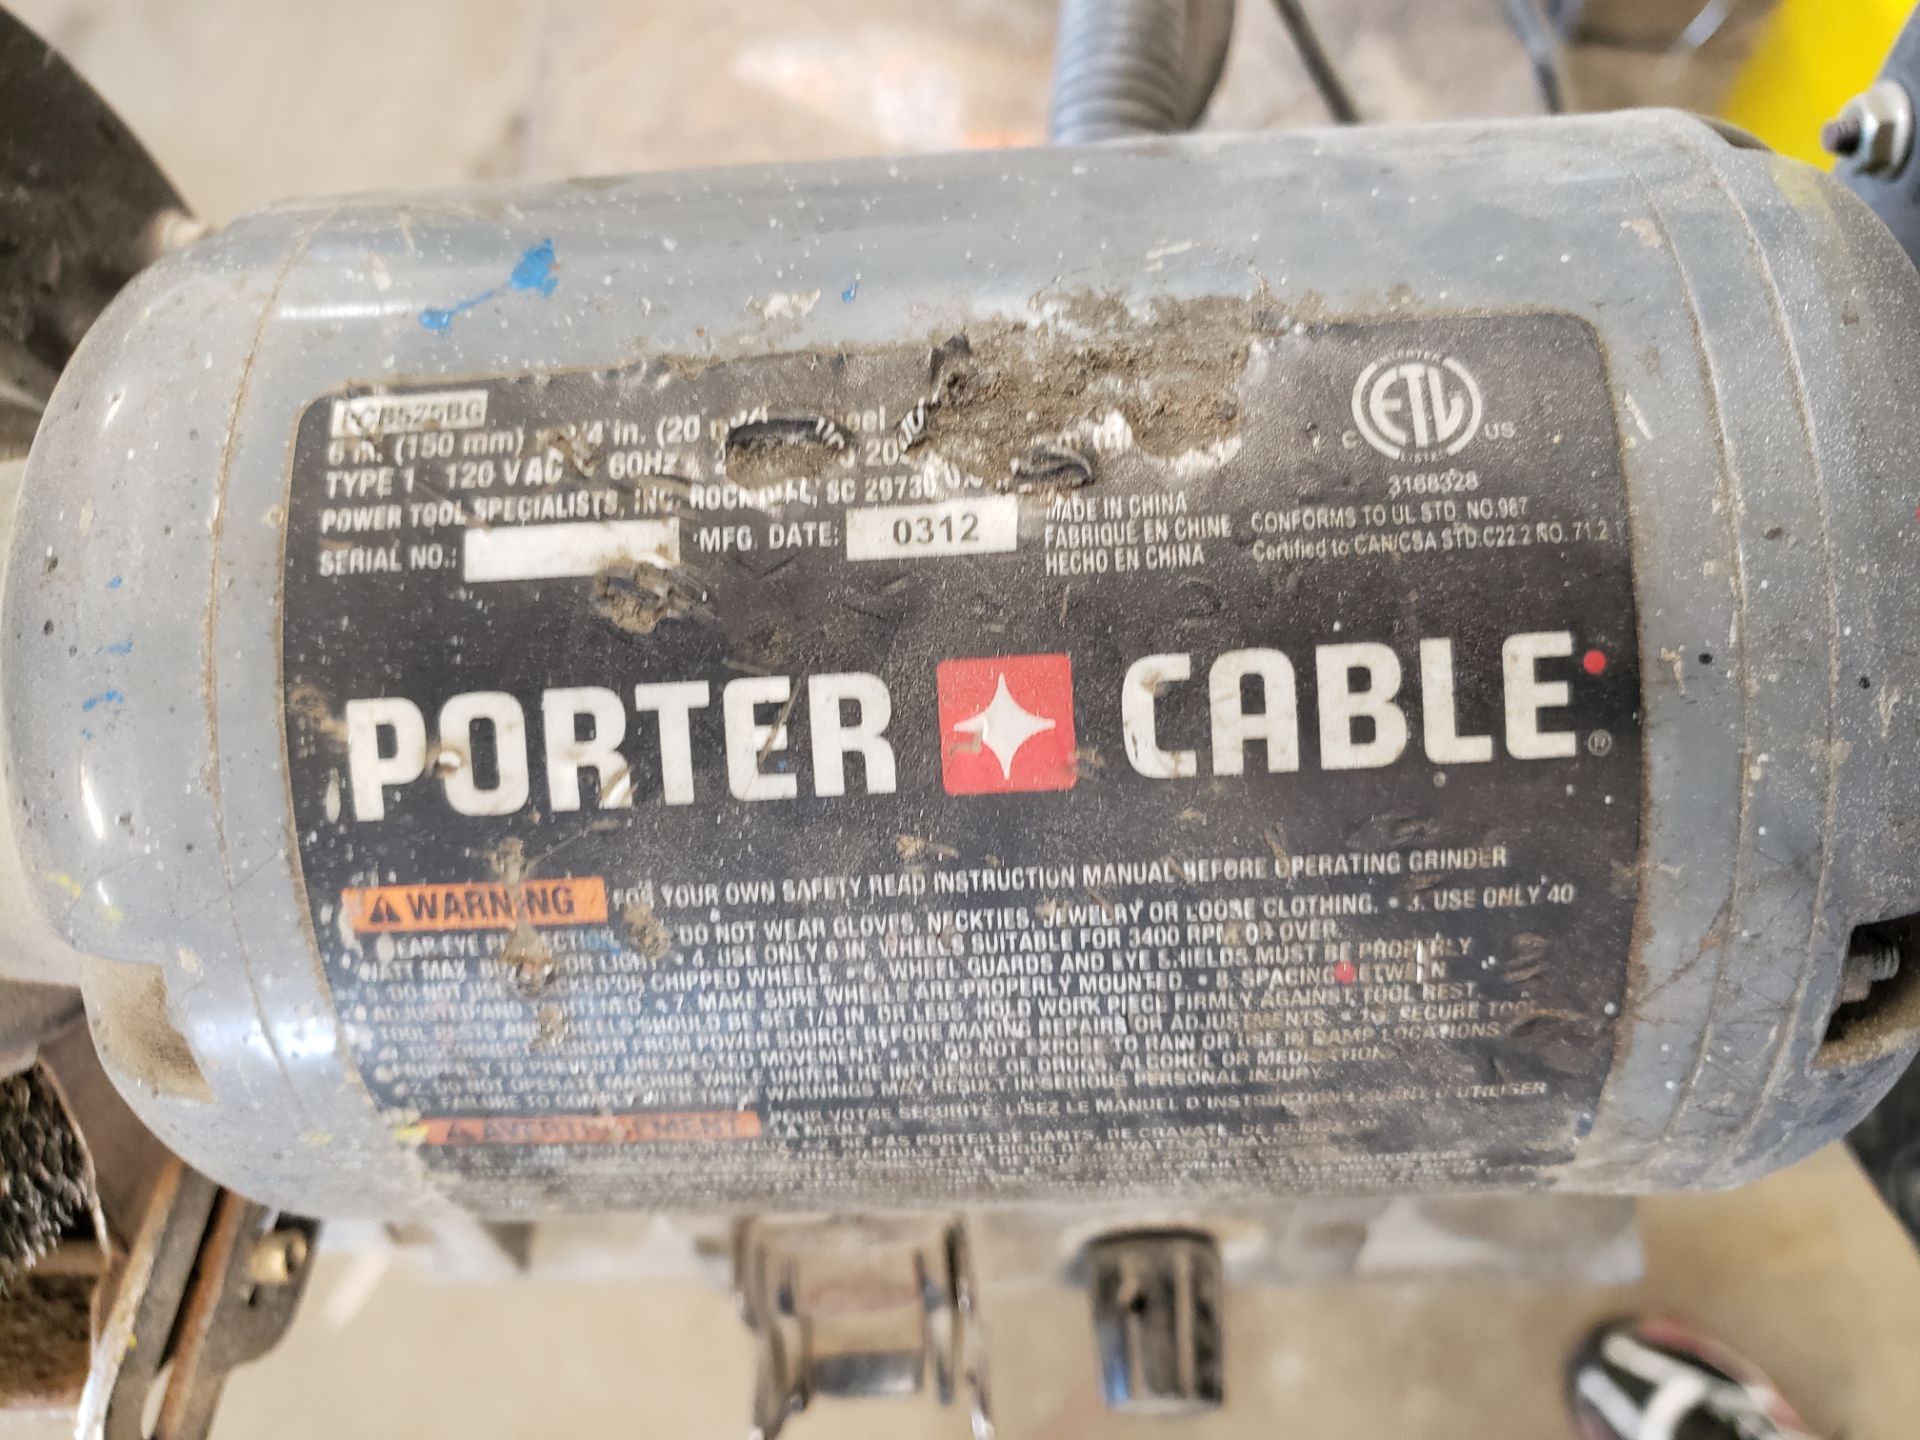 Porter Cable Dual Pedestal Grinder - Image 4 of 4